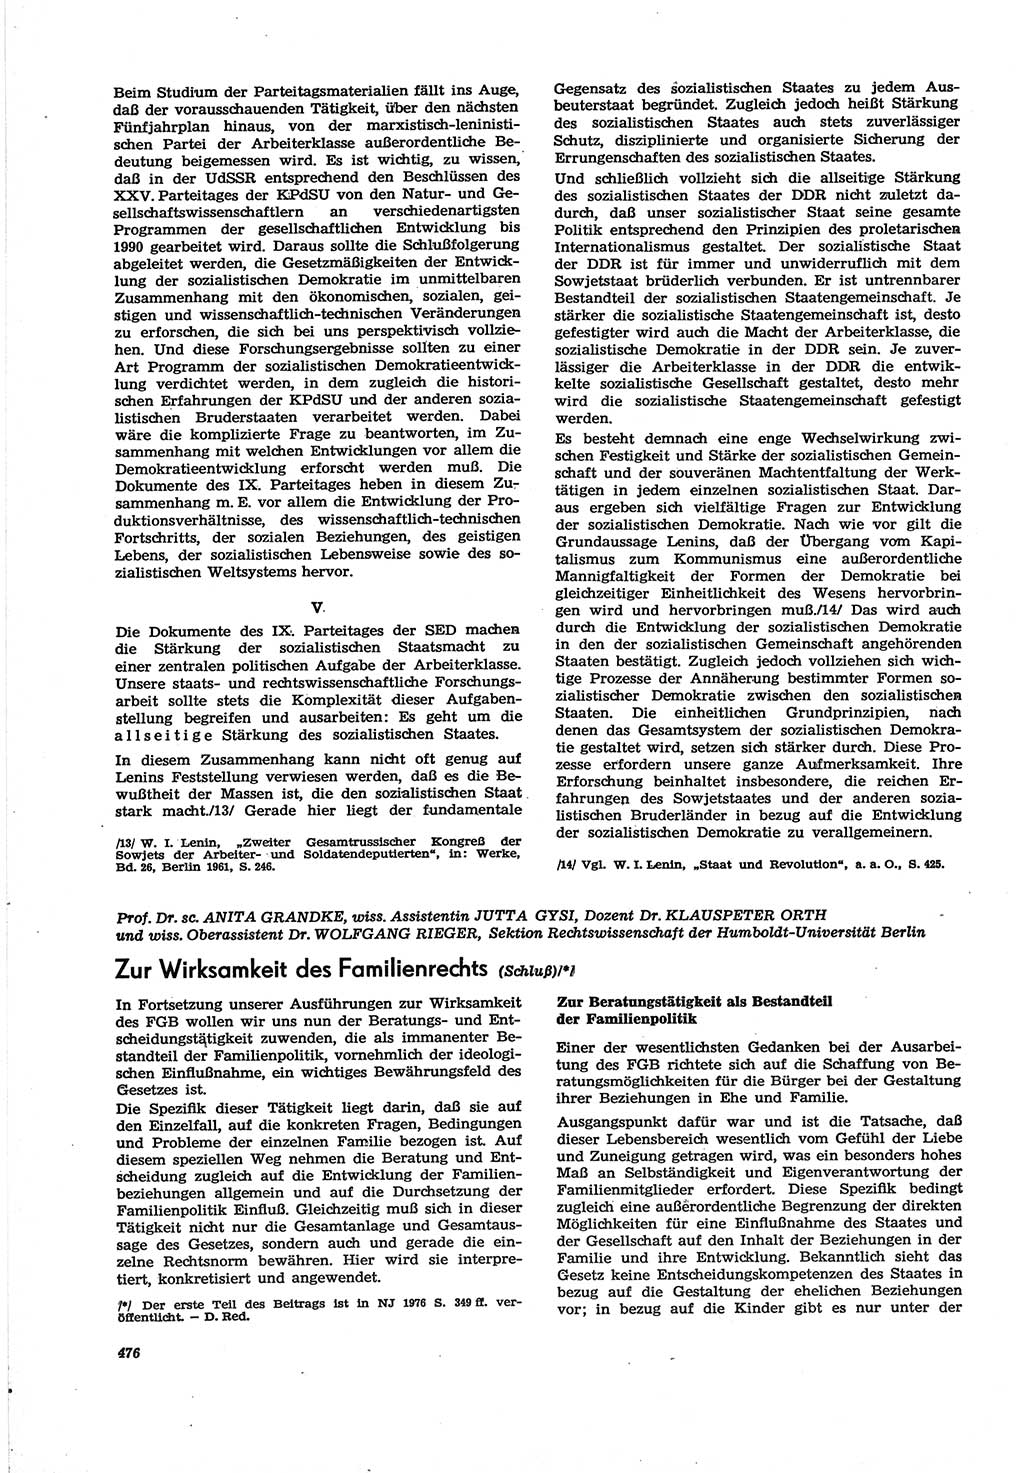 Neue Justiz (NJ), Zeitschrift für Recht und Rechtswissenschaft [Deutsche Demokratische Republik (DDR)], 30. Jahrgang 1976, Seite 476 (NJ DDR 1976, S. 476)